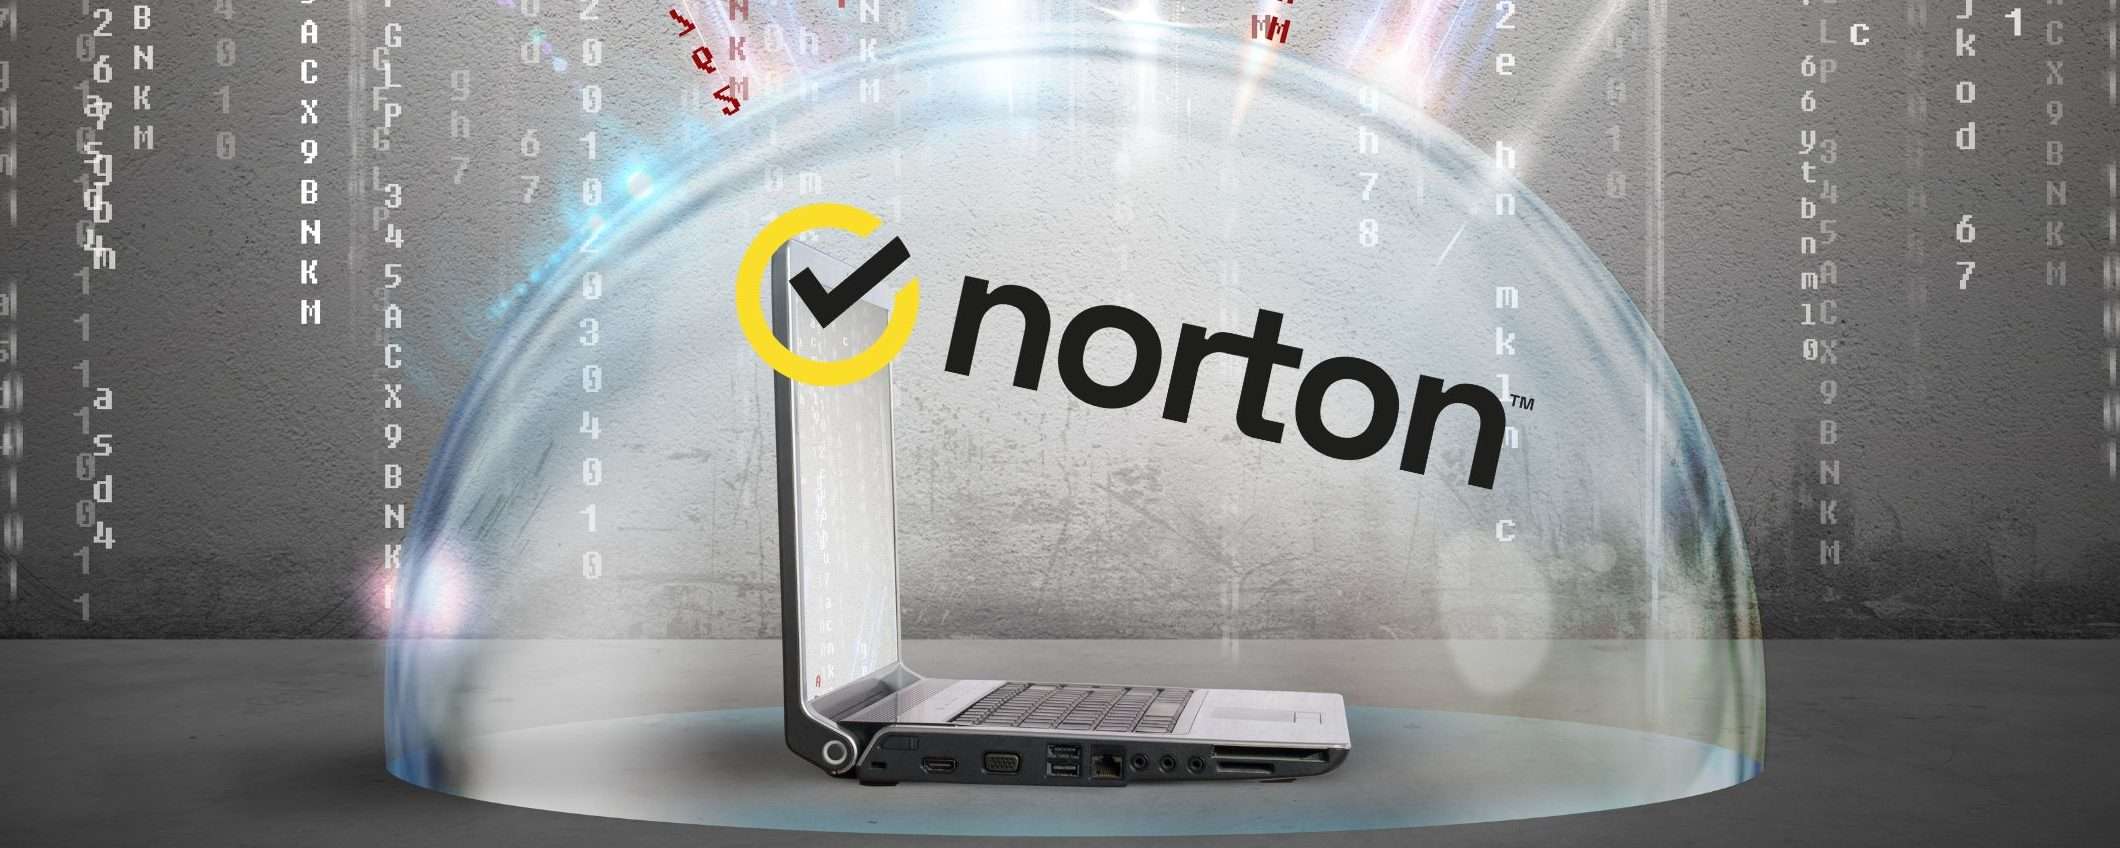 Norton Antivirus in sconto: La tua sicurezza digitale a prezzi ridotti